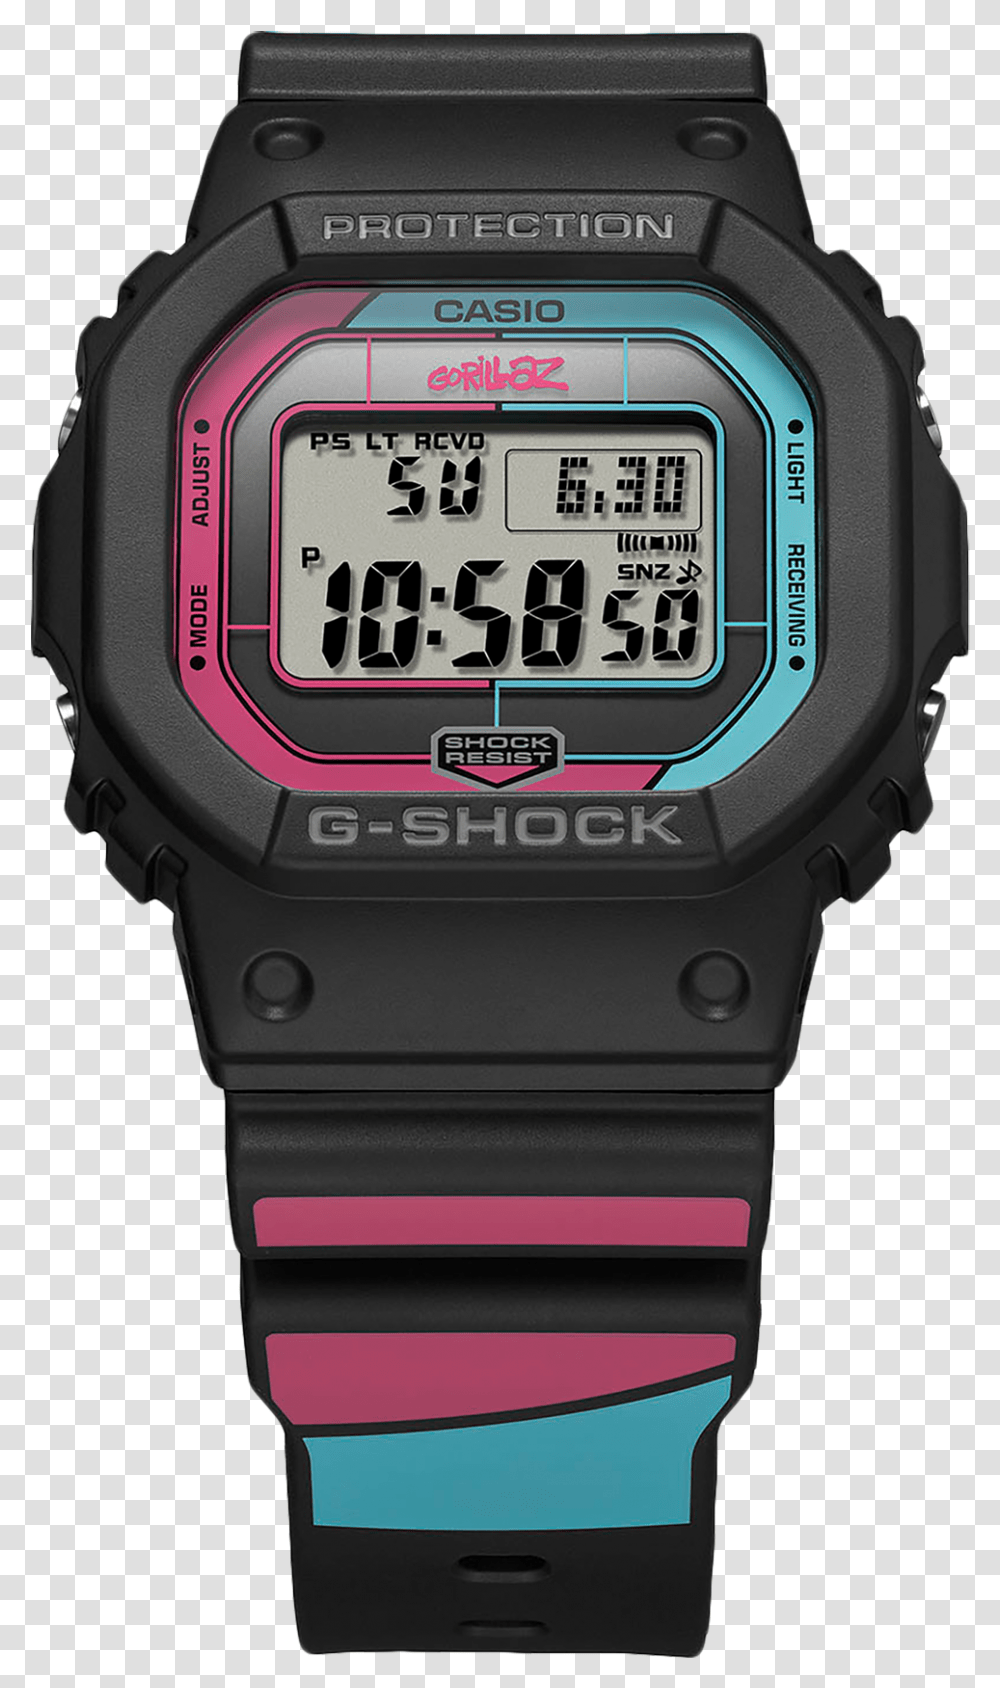 Gorillaz Wiki Casio G Shock Gorillaz, Wristwatch, Digital Watch, Gas Pump, Machine Transparent Png